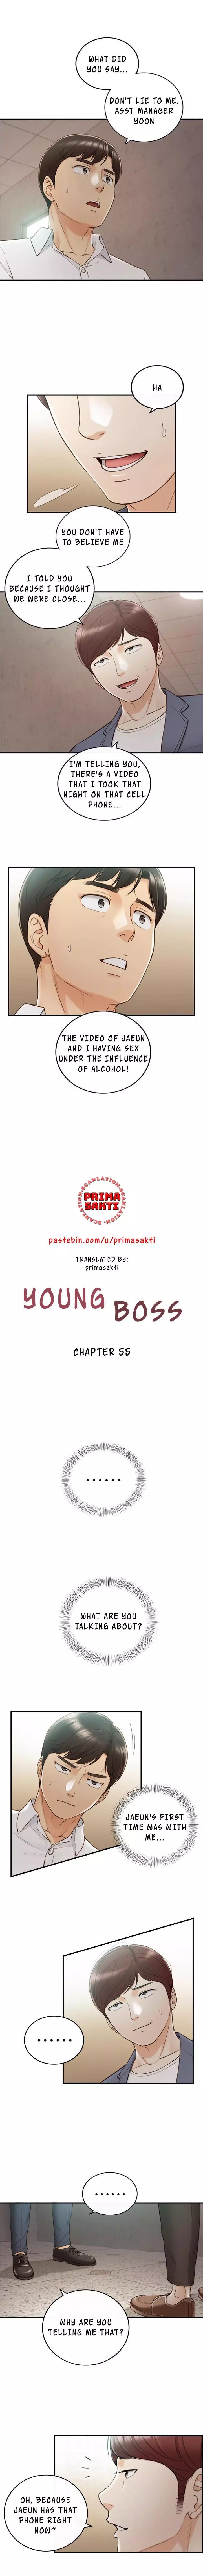 Young Boss Manhwa 01-73 434ページ